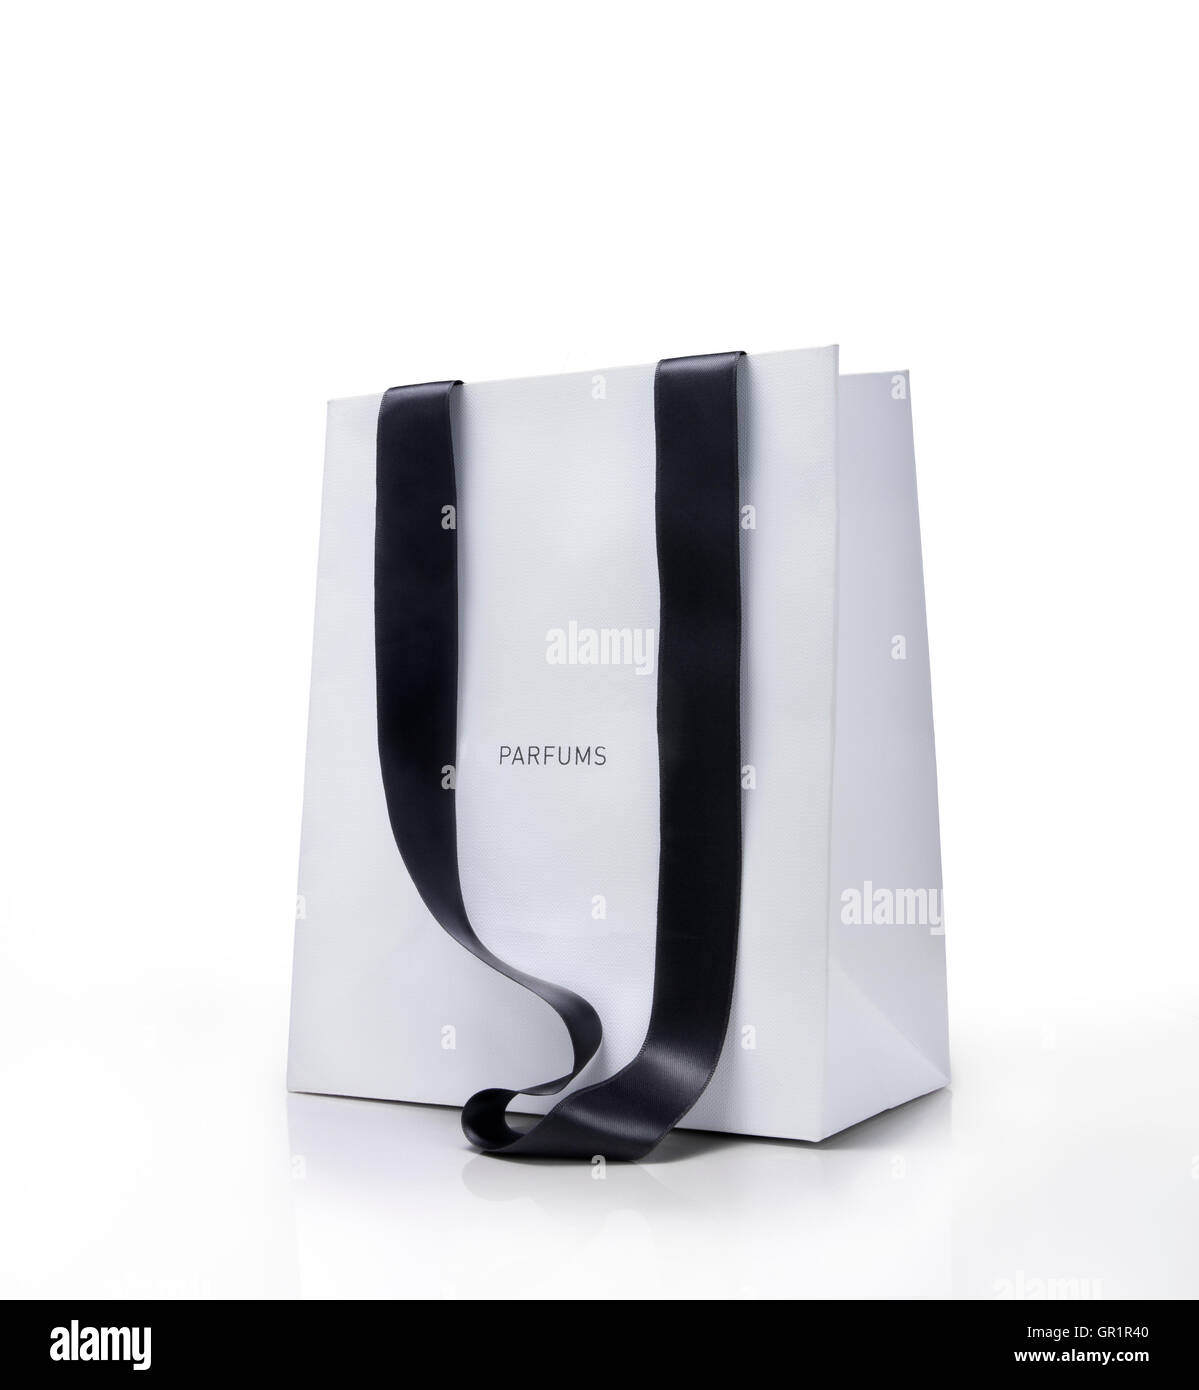 White shopping bag con maniglie nere. Concetto di profumi.percorso di clipping appena sul sacchetto. Foto Stock